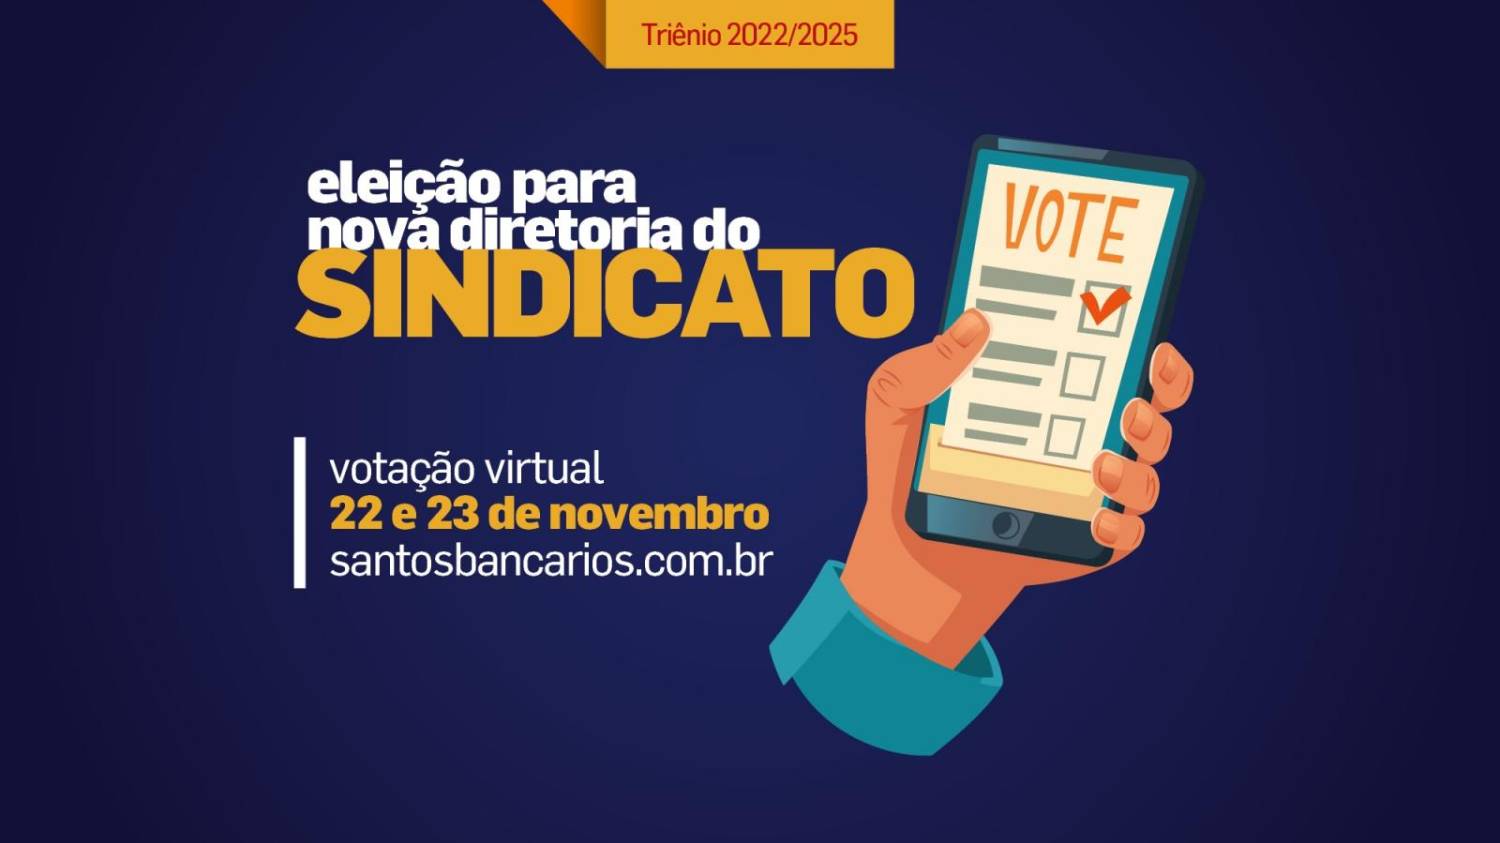 Eleição para nova diretoria do Sindicato de Santos e Região, dias 22 e 23